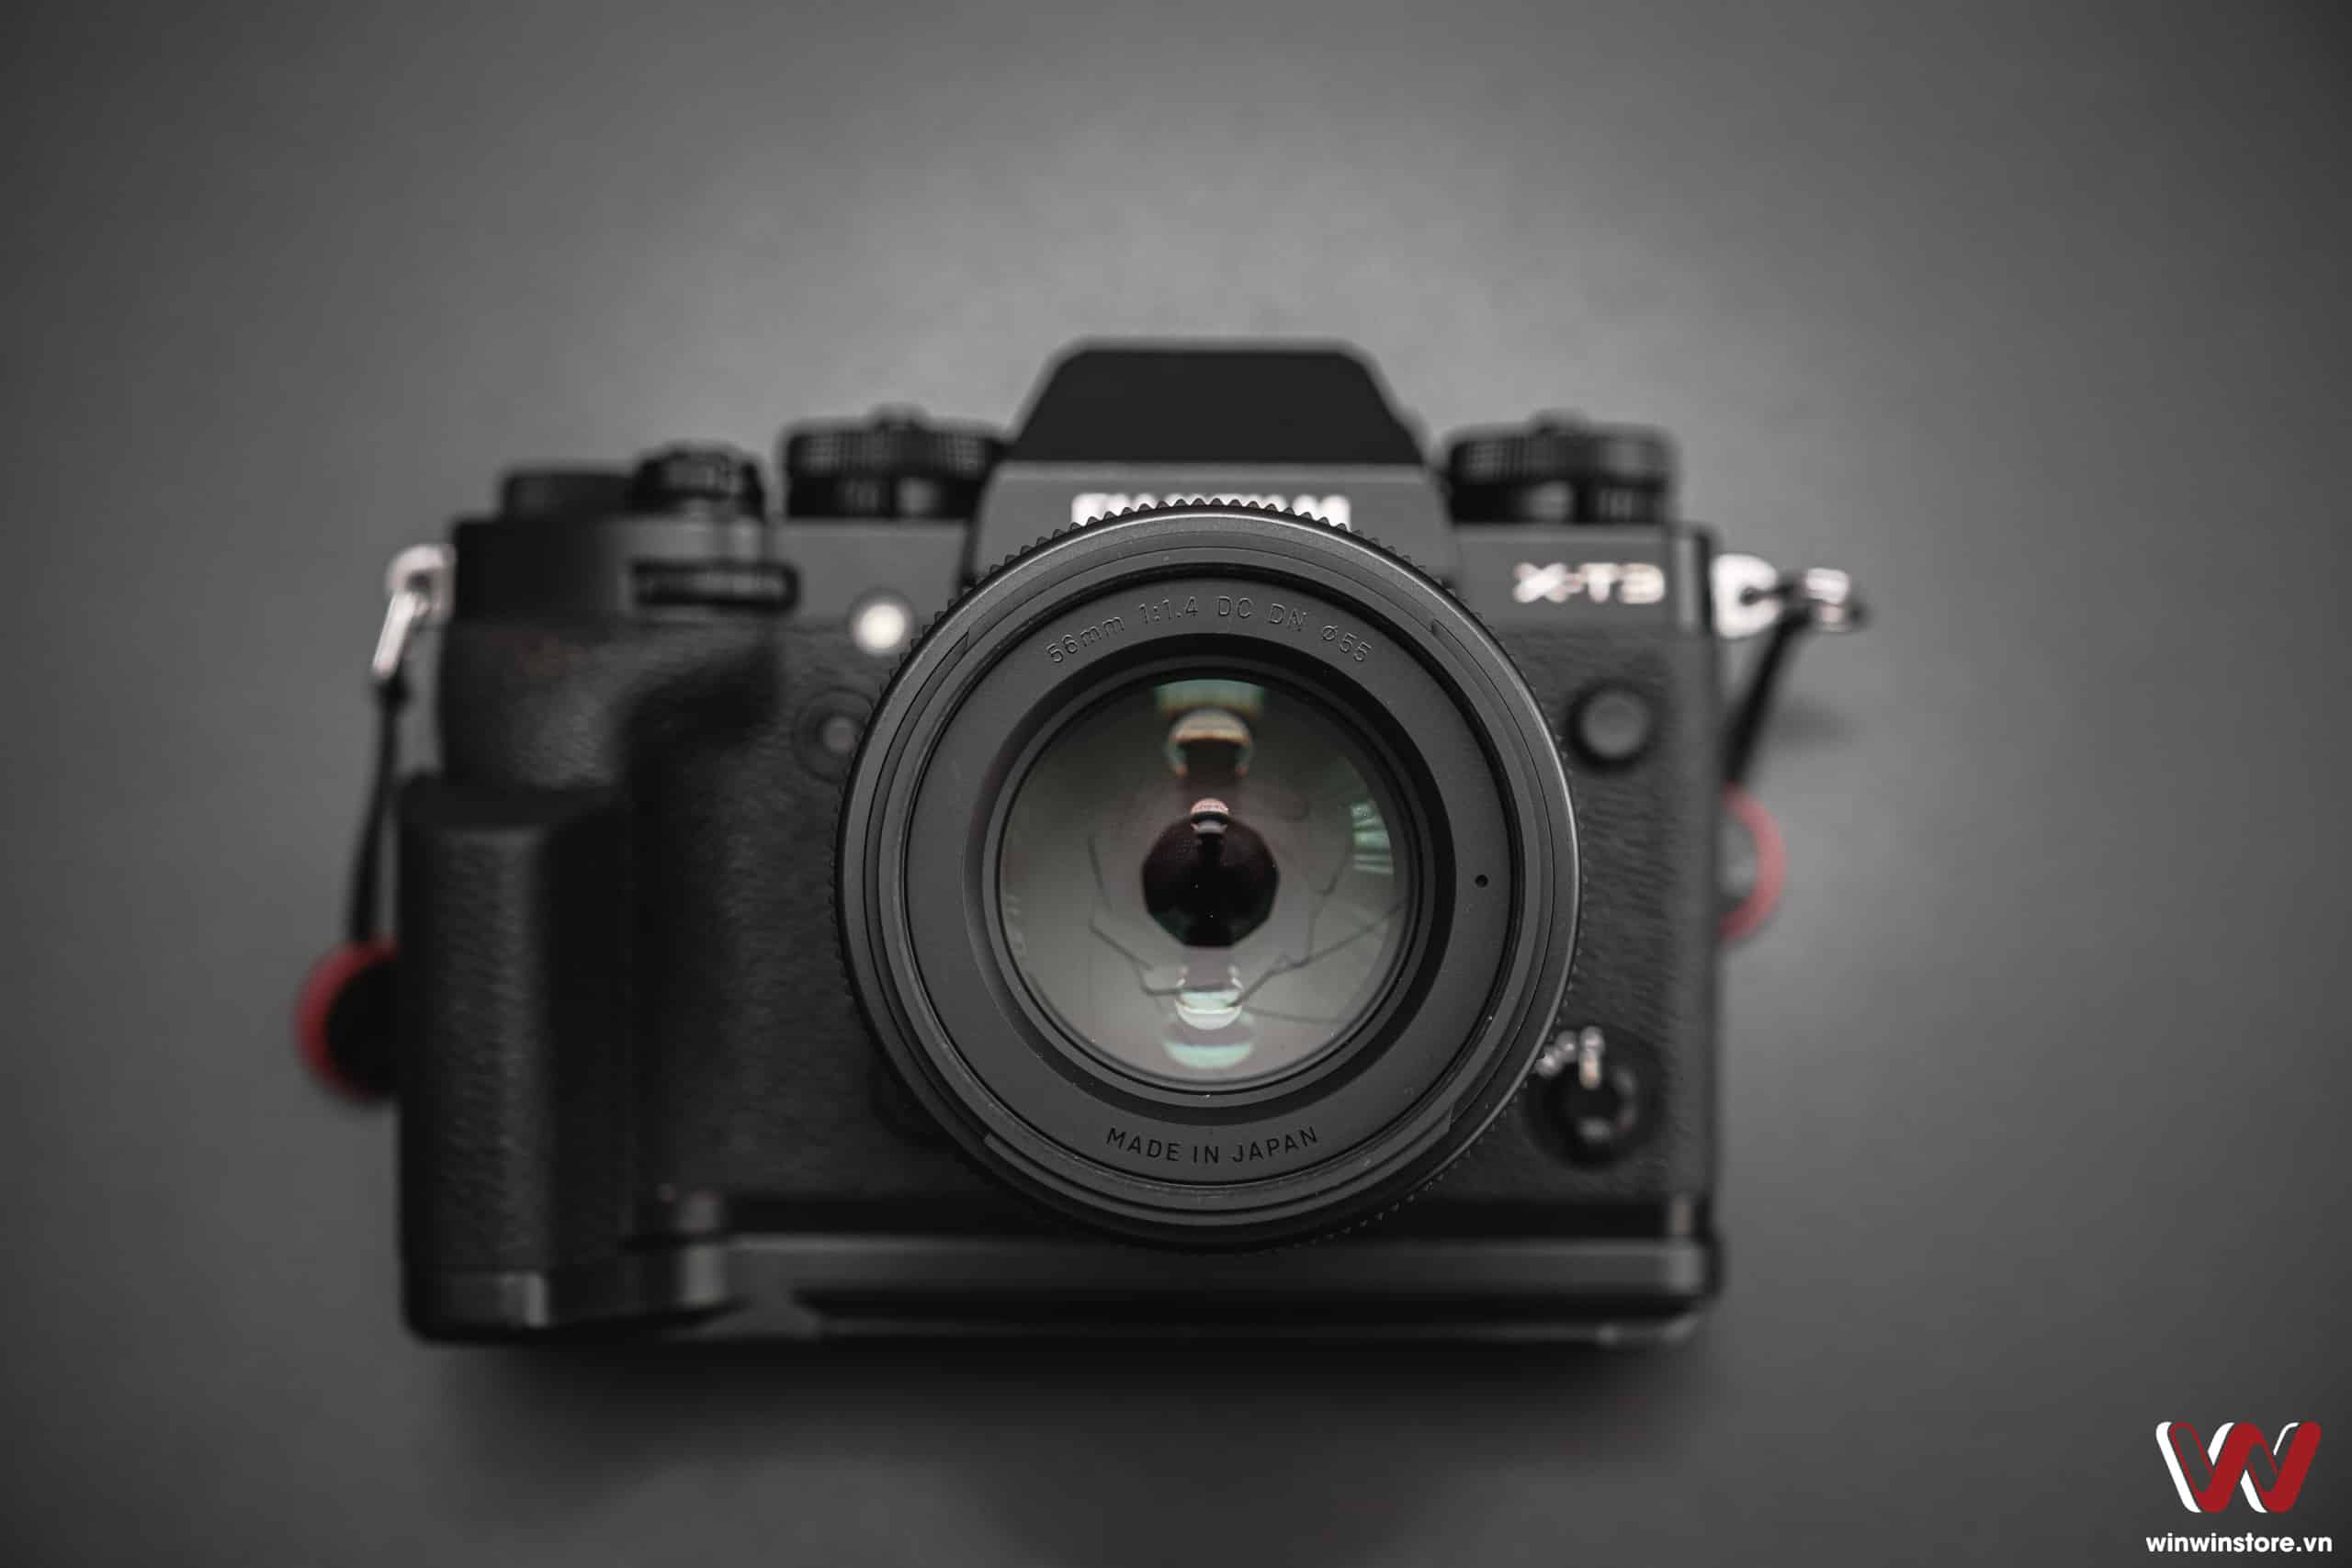 Trên tay ống kính Sigma 56mm F1.4 DC DN Contemporary cho Fujifilm: Ống kính chân dung giá tốt chất lượng cao